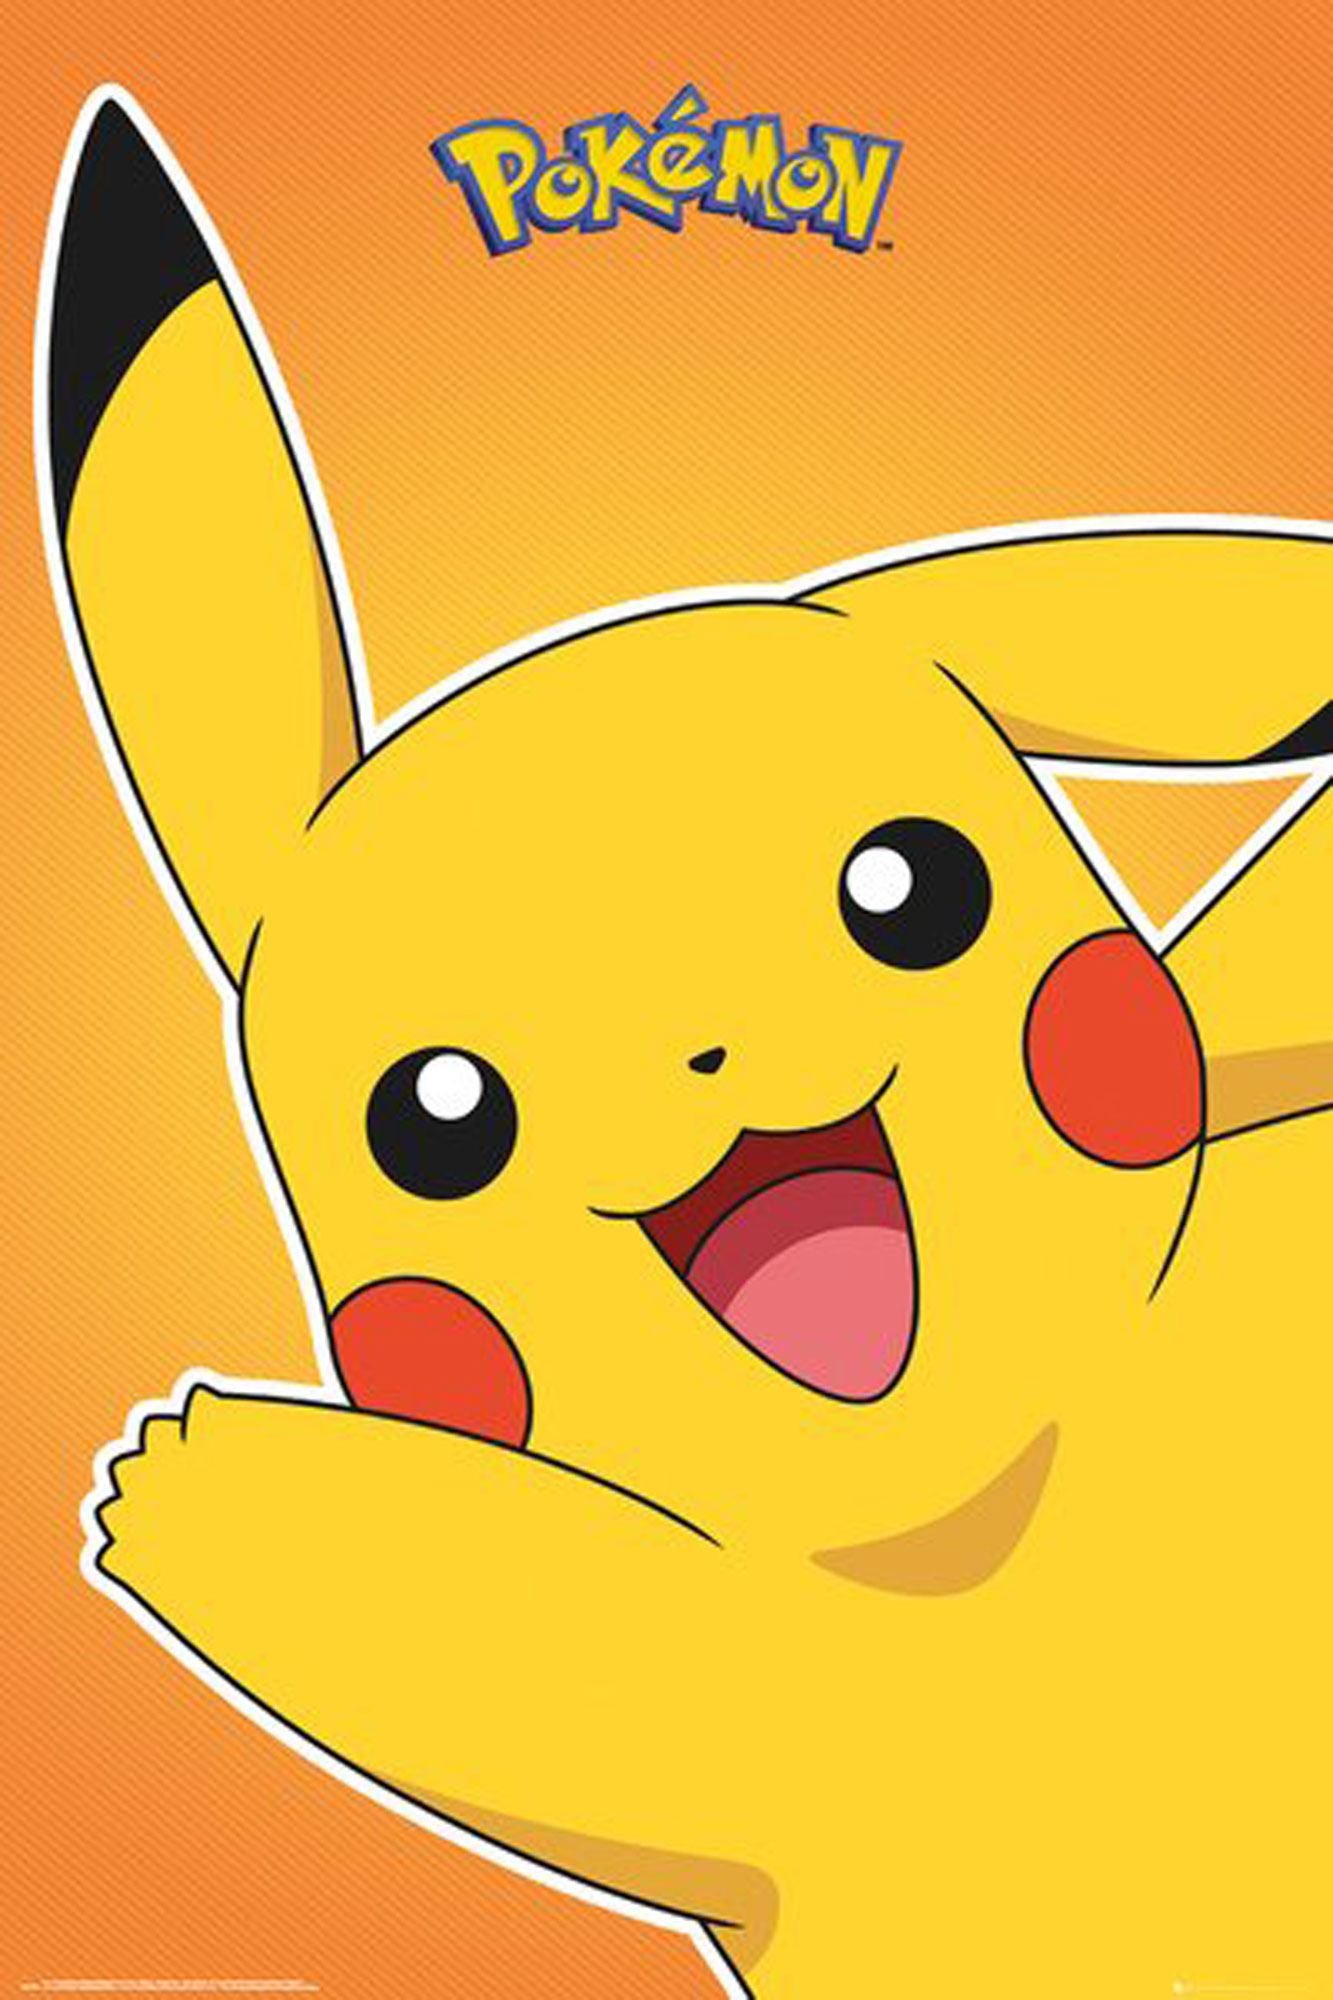 Pikachu - Pokémon - Pokemon Motiv 2